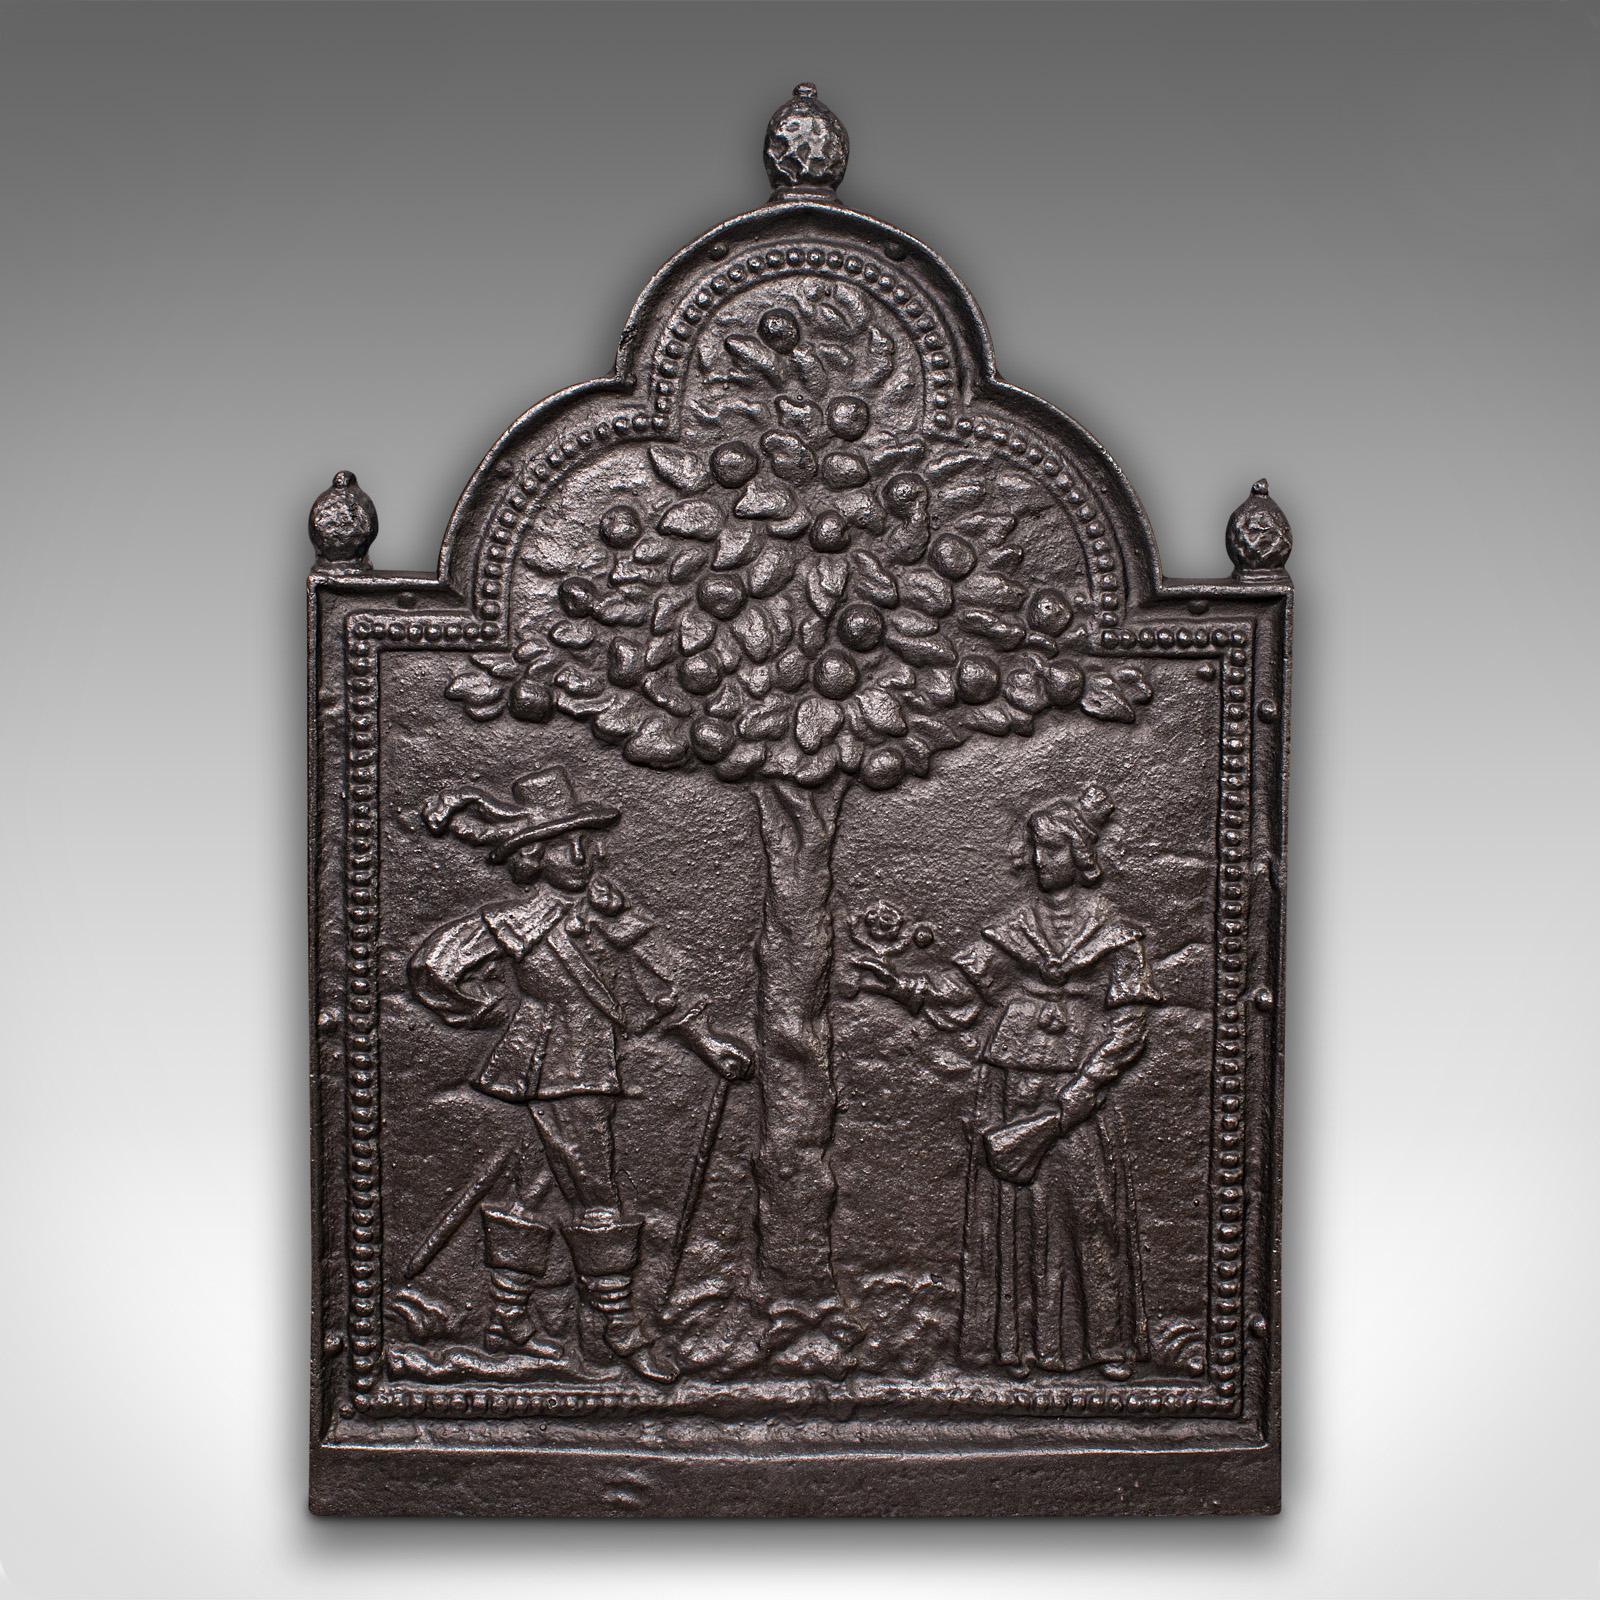 Il s'agit d'une ancienne plaque de cheminée décorative. Dossier d'âtre de cheminée en fonte anglaise avec scène d'arbre de vie, datant de la fin de la période victorienne, vers 1900.

Agréablement moulé avec une paire de personnages et un motif